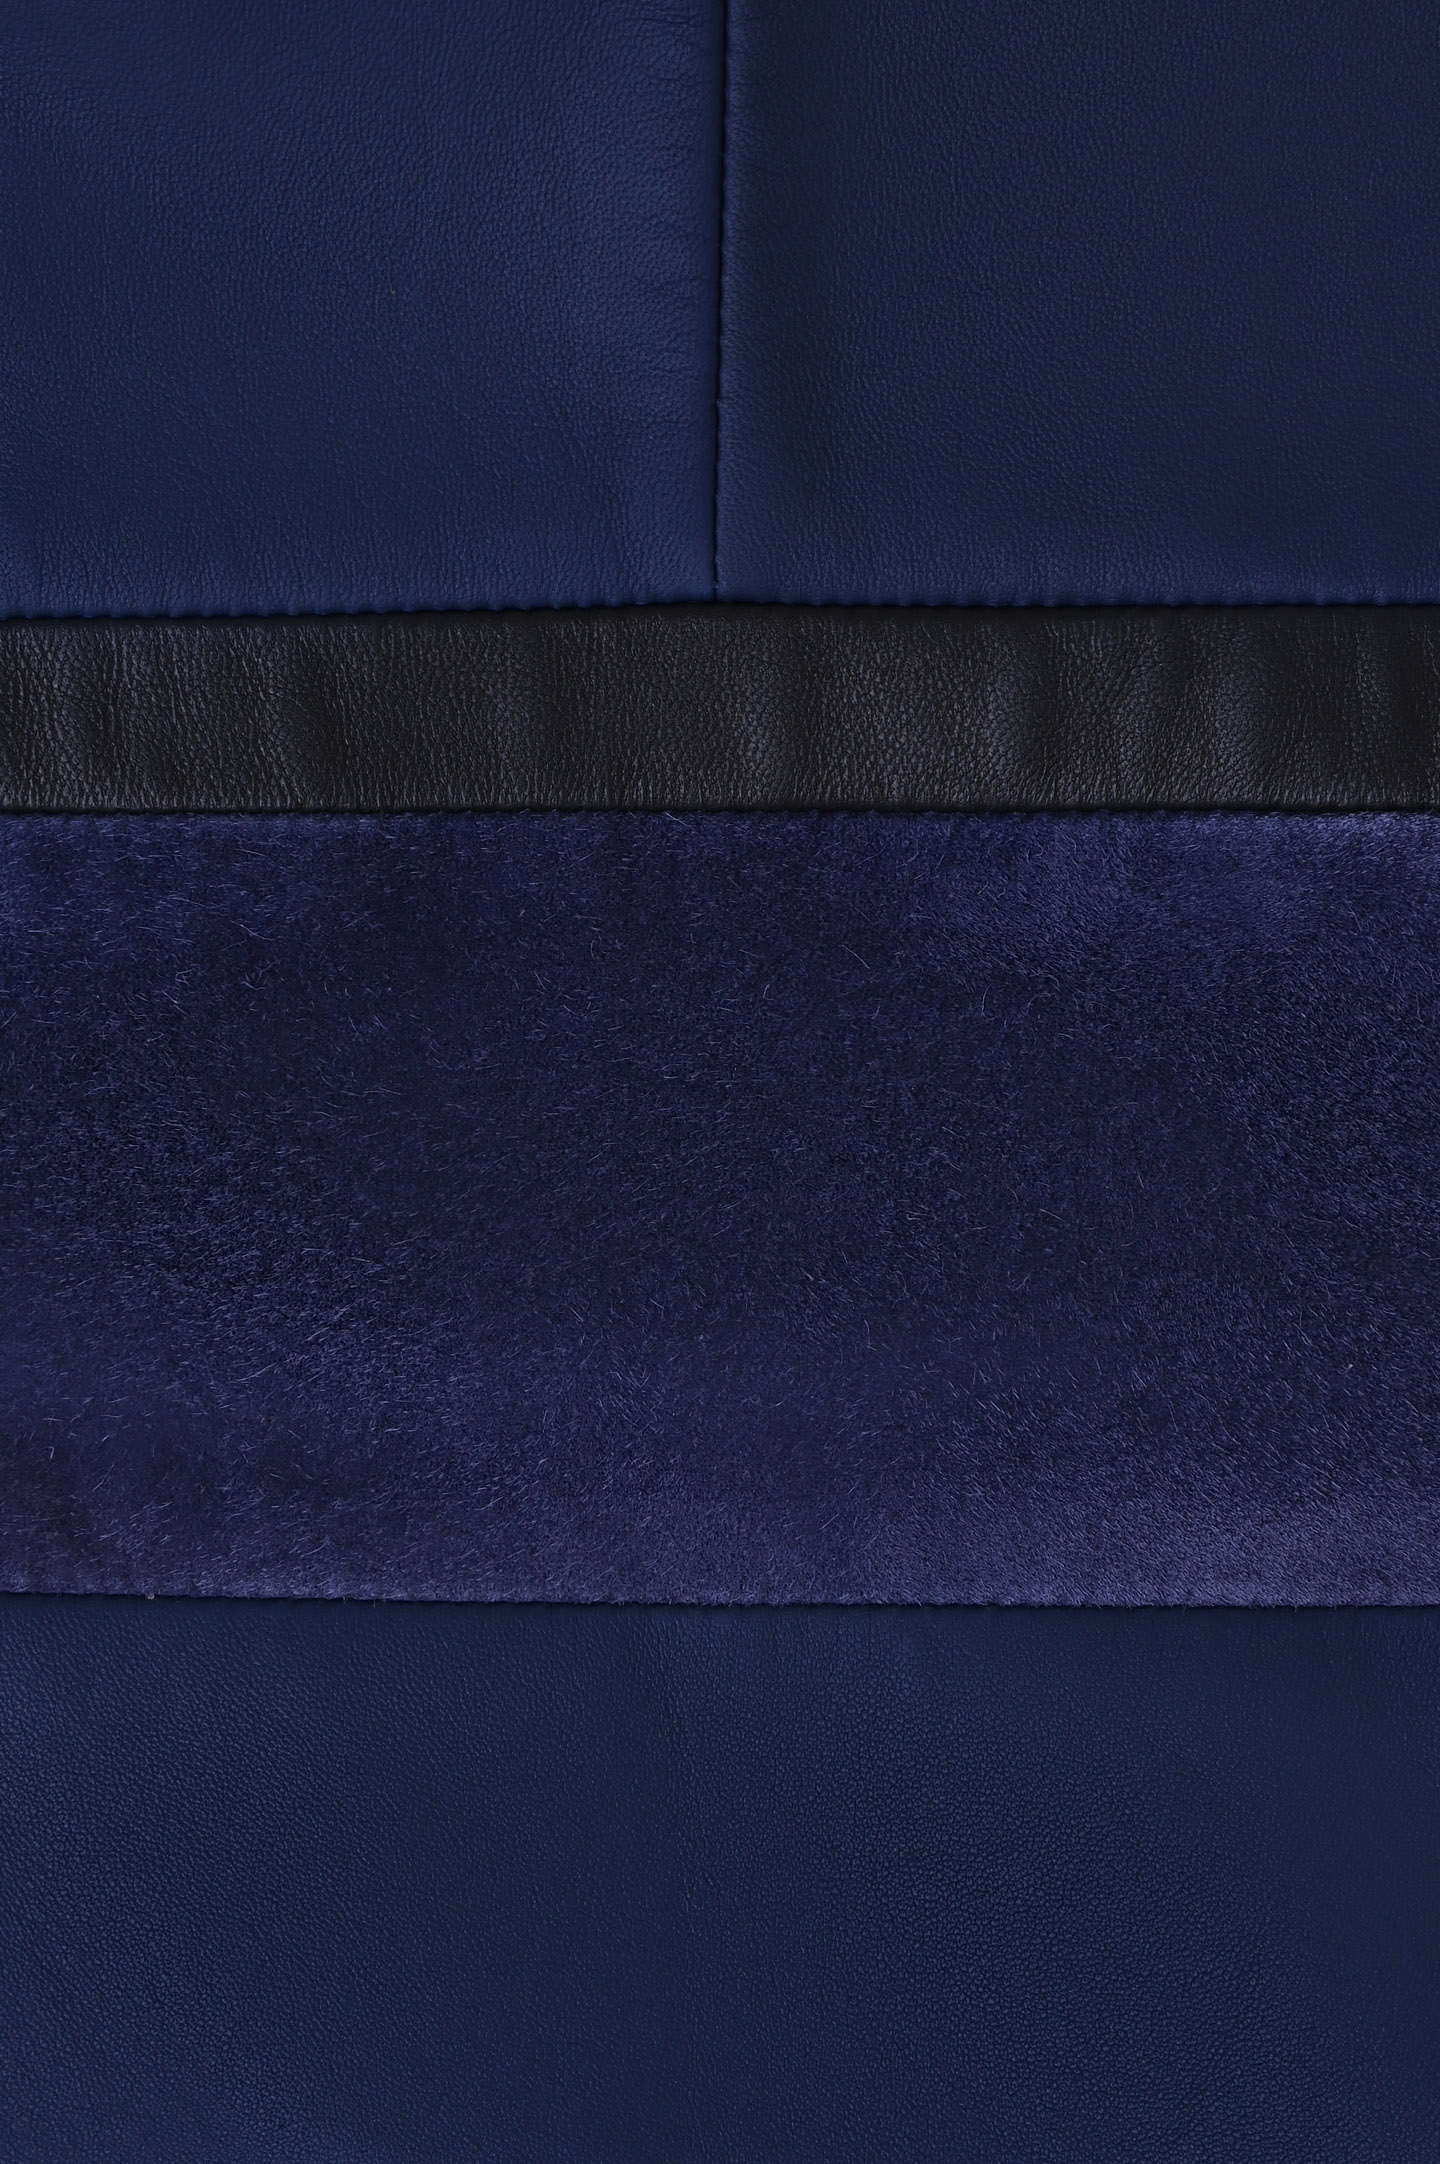 Куртка STEFANO RICCI MZJ8100040 B0233 B036, цвет: Синий, Мужской